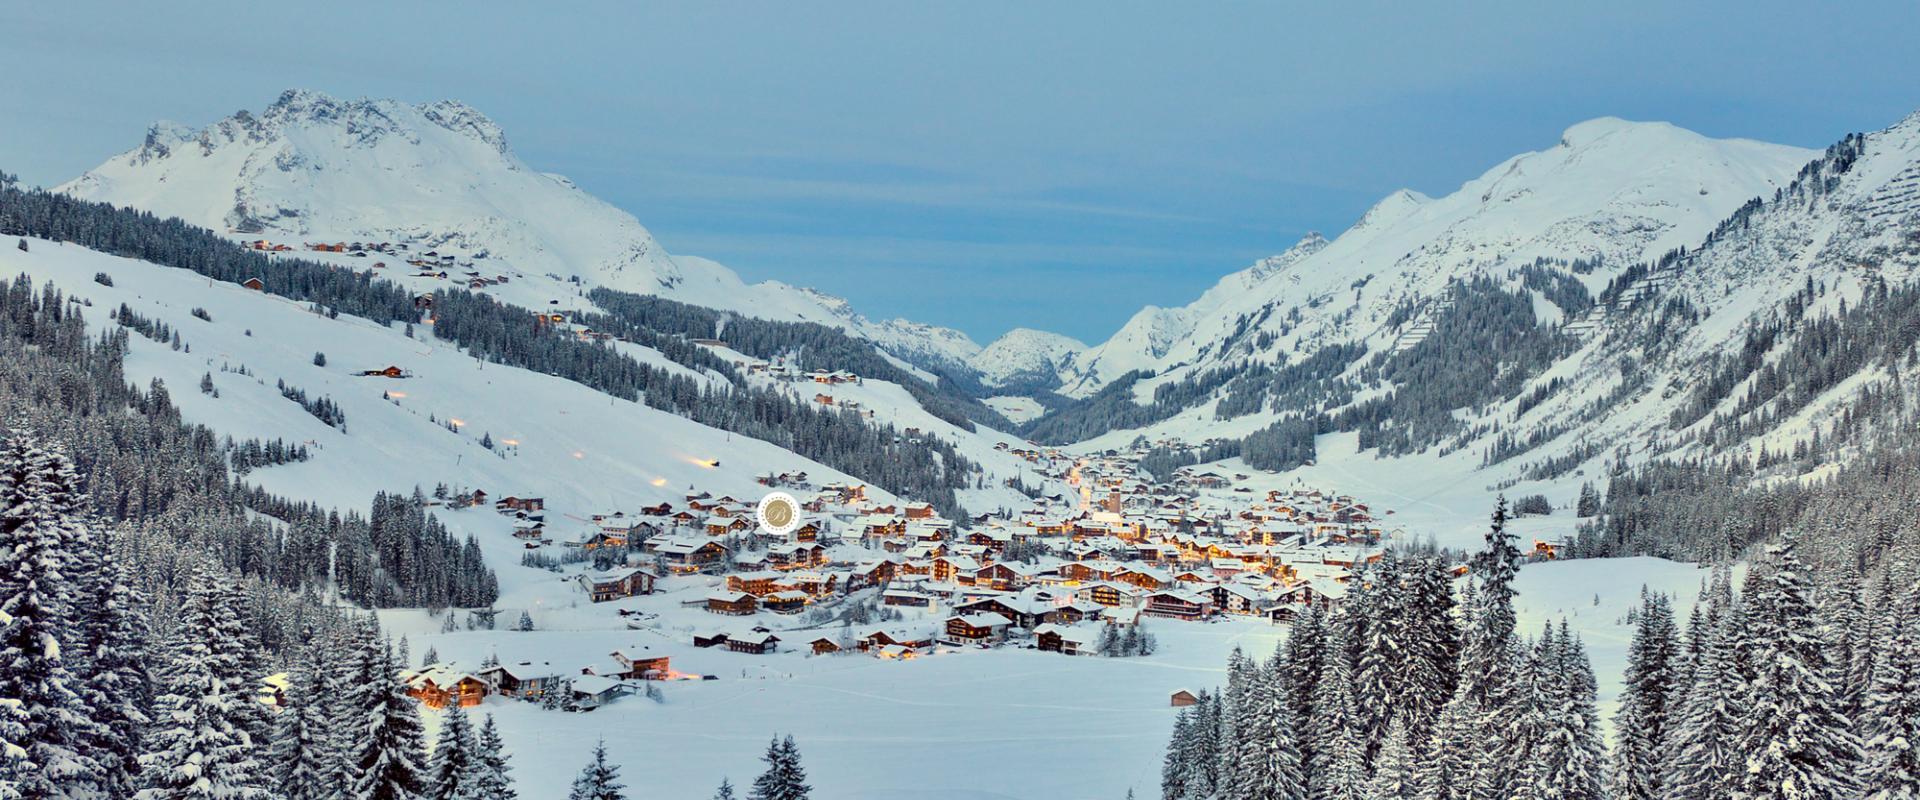 Lage Hotel Bellevue in Lech am Arlberg